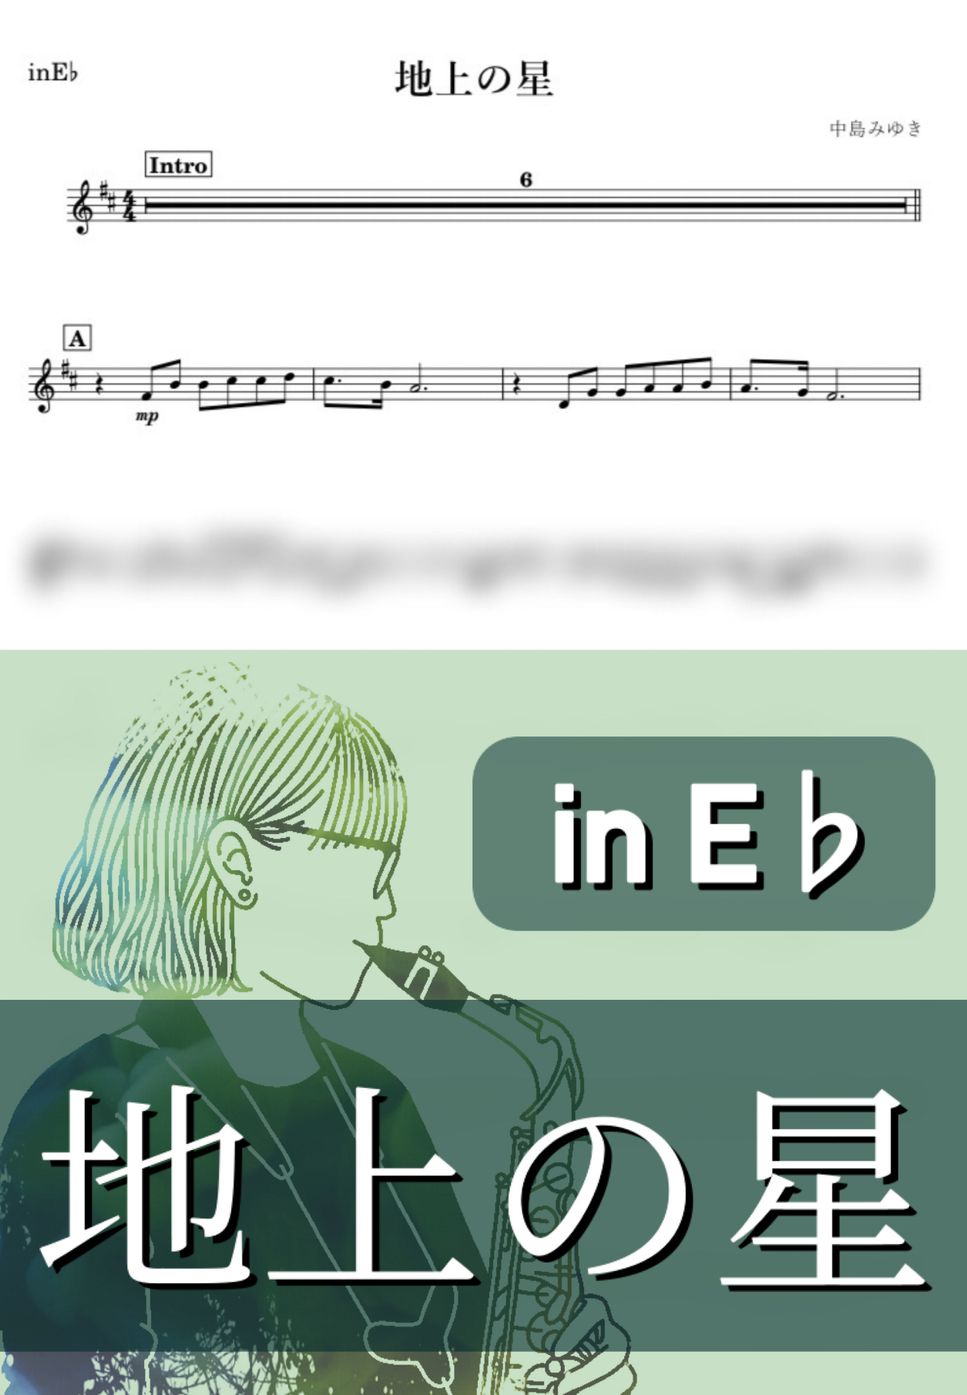 中島みゆき - 地上の星 (E♭) by kanamusic